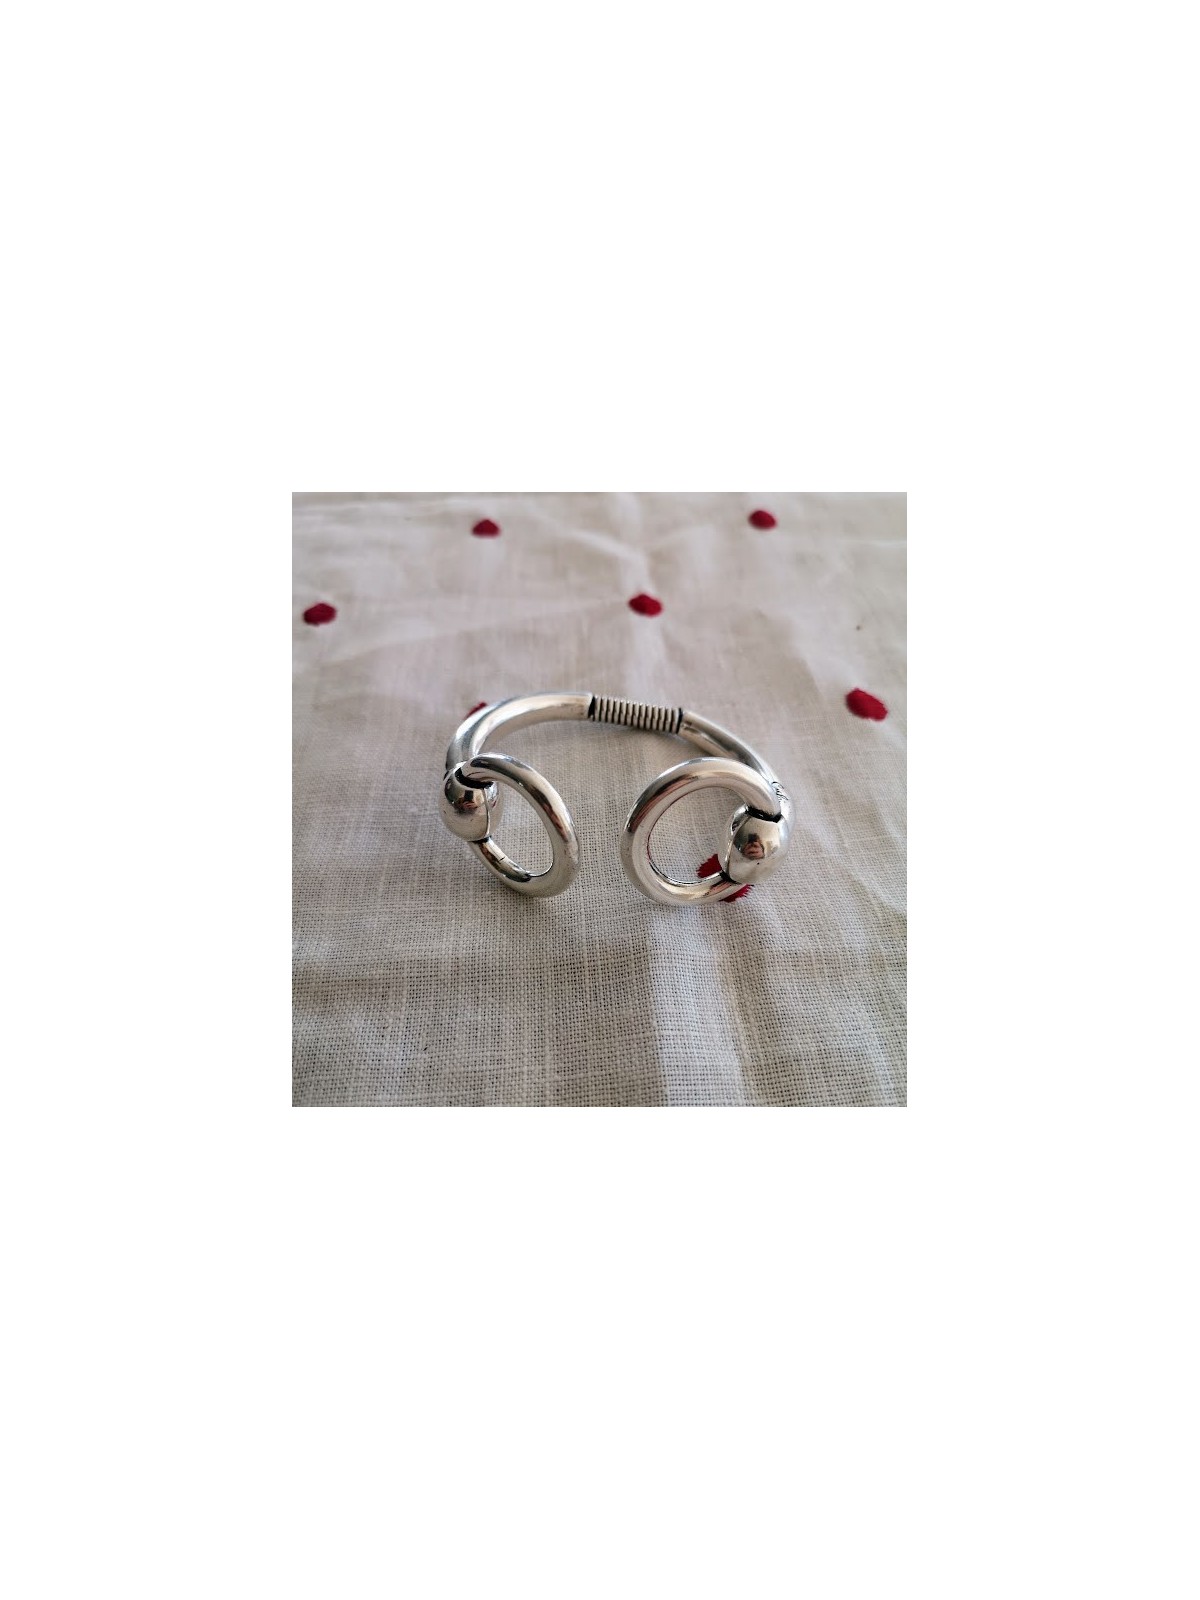 Bracelet Ciclon en plaqué argent |1 vue de face | Tilleulmenthe boutique de mode femme en ligne